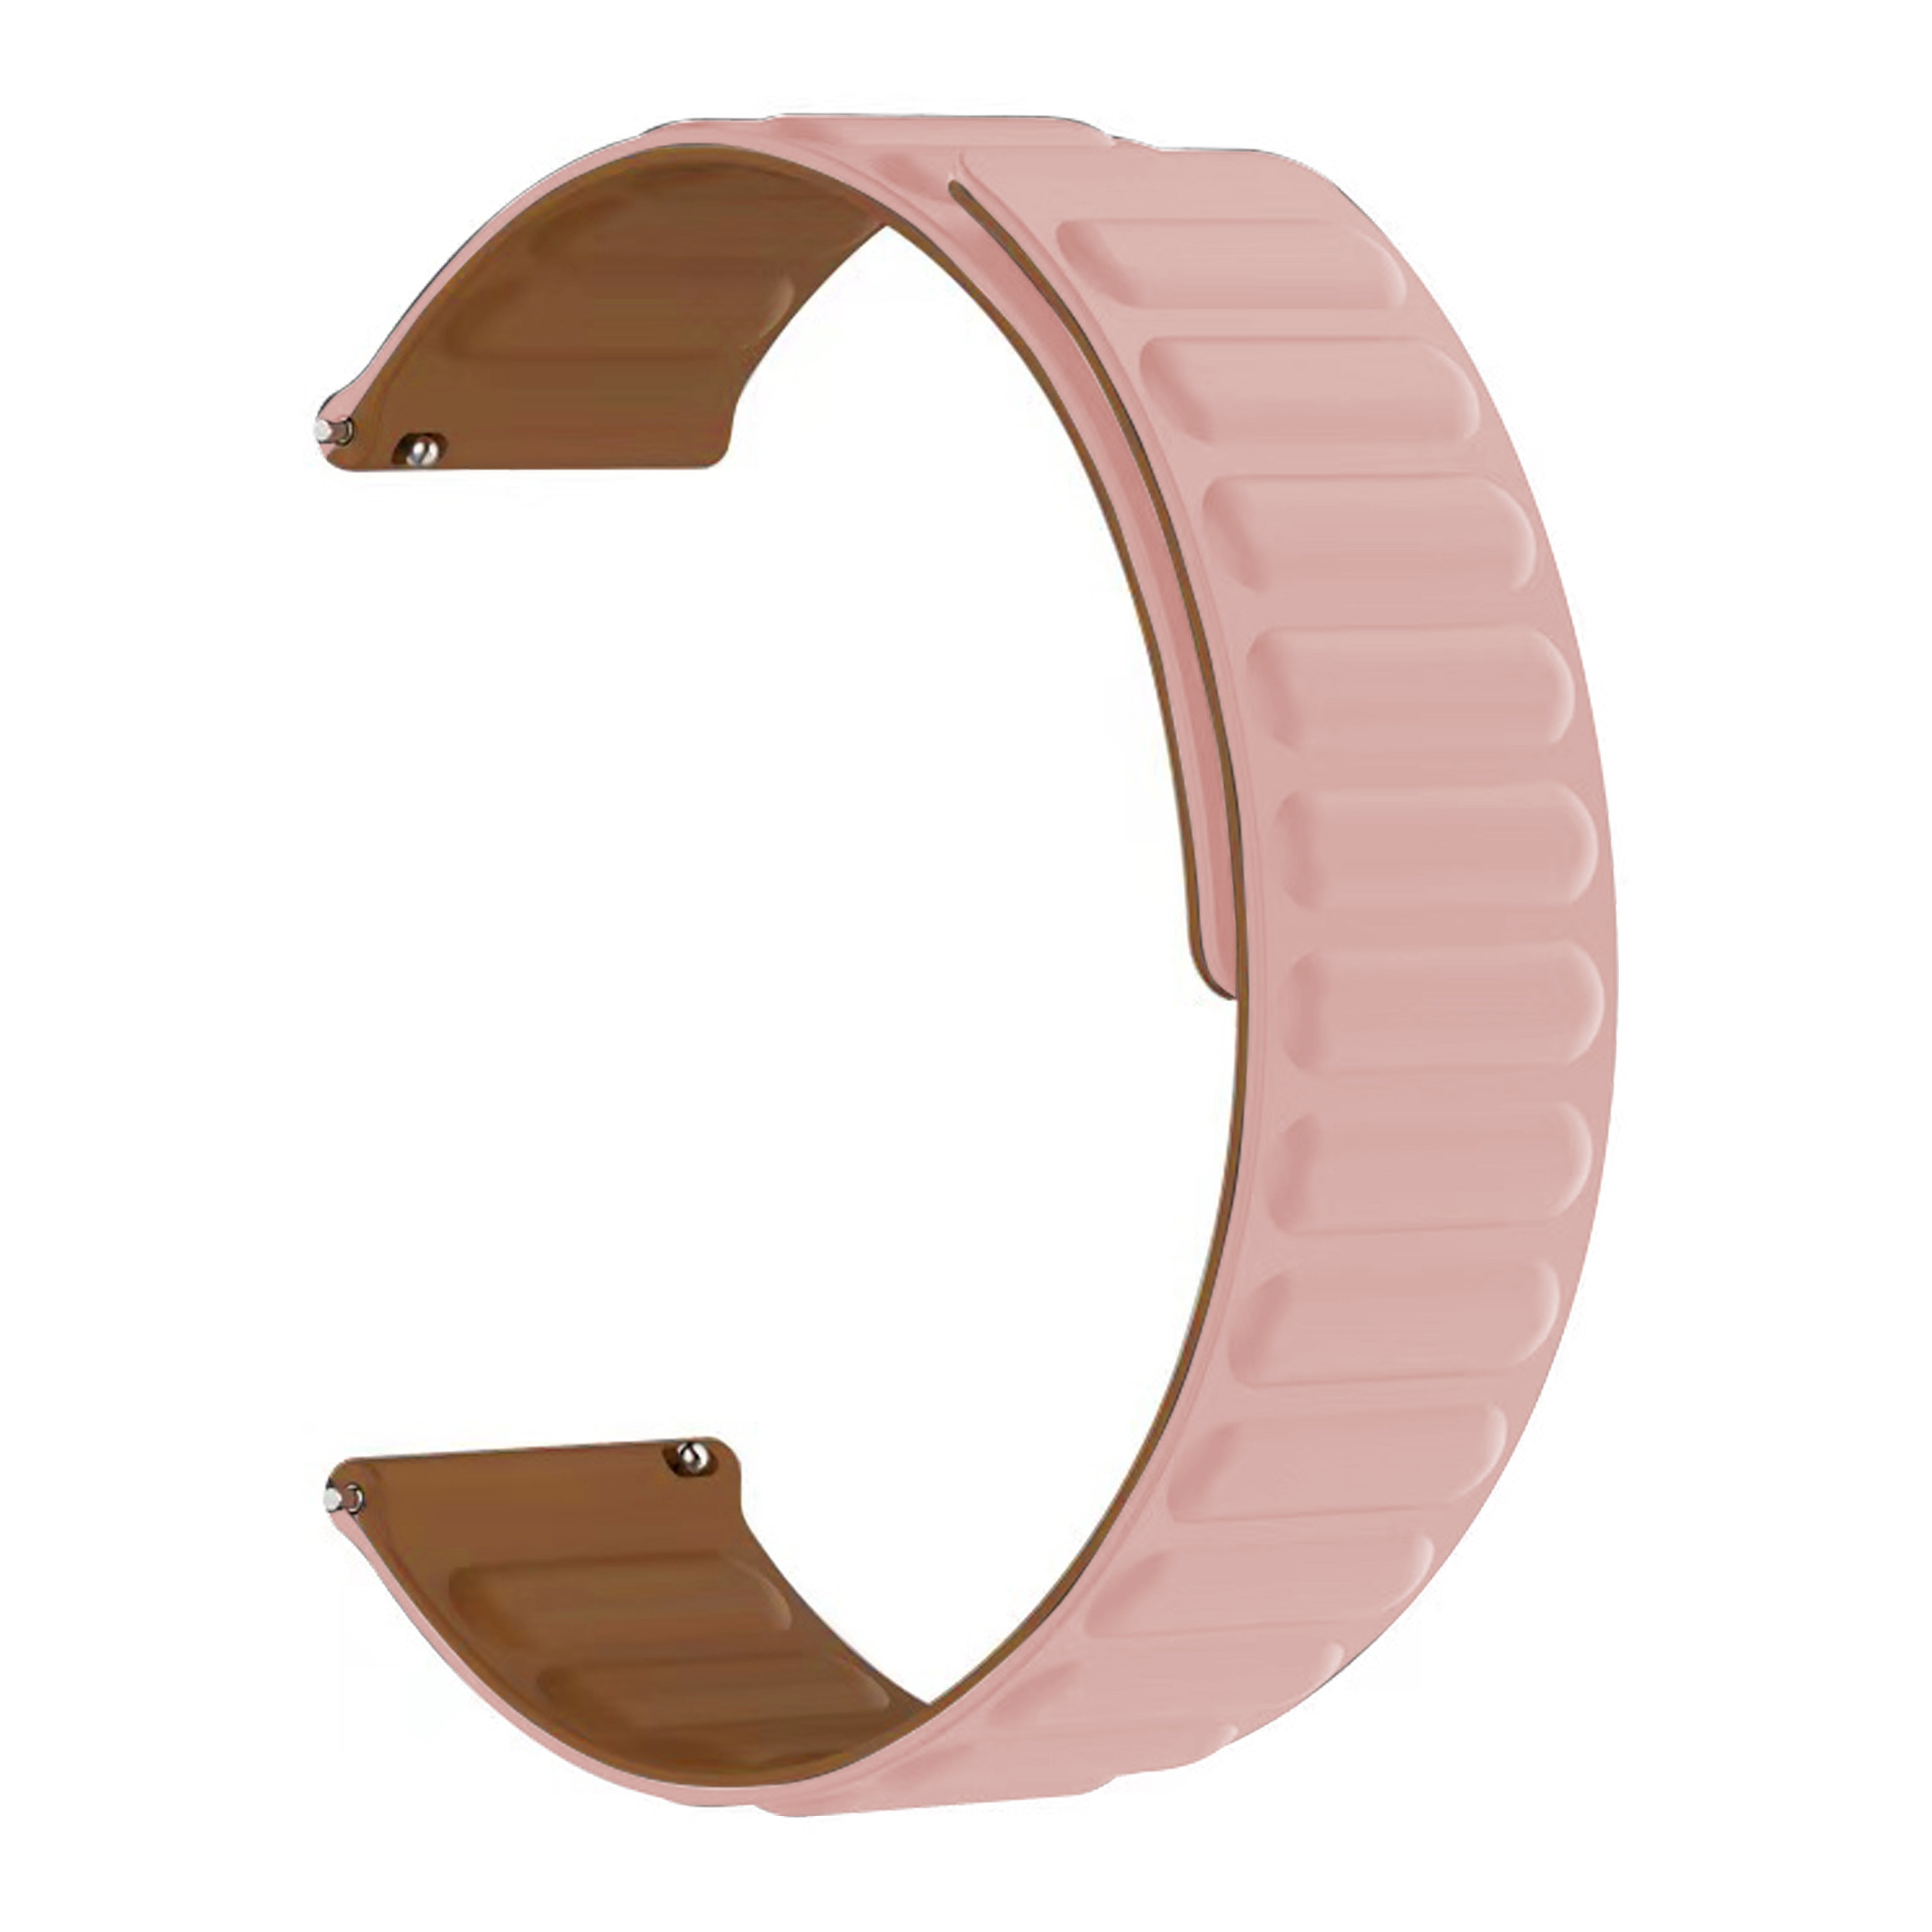 Correa magnética silicona Coros Apex 2 rosado